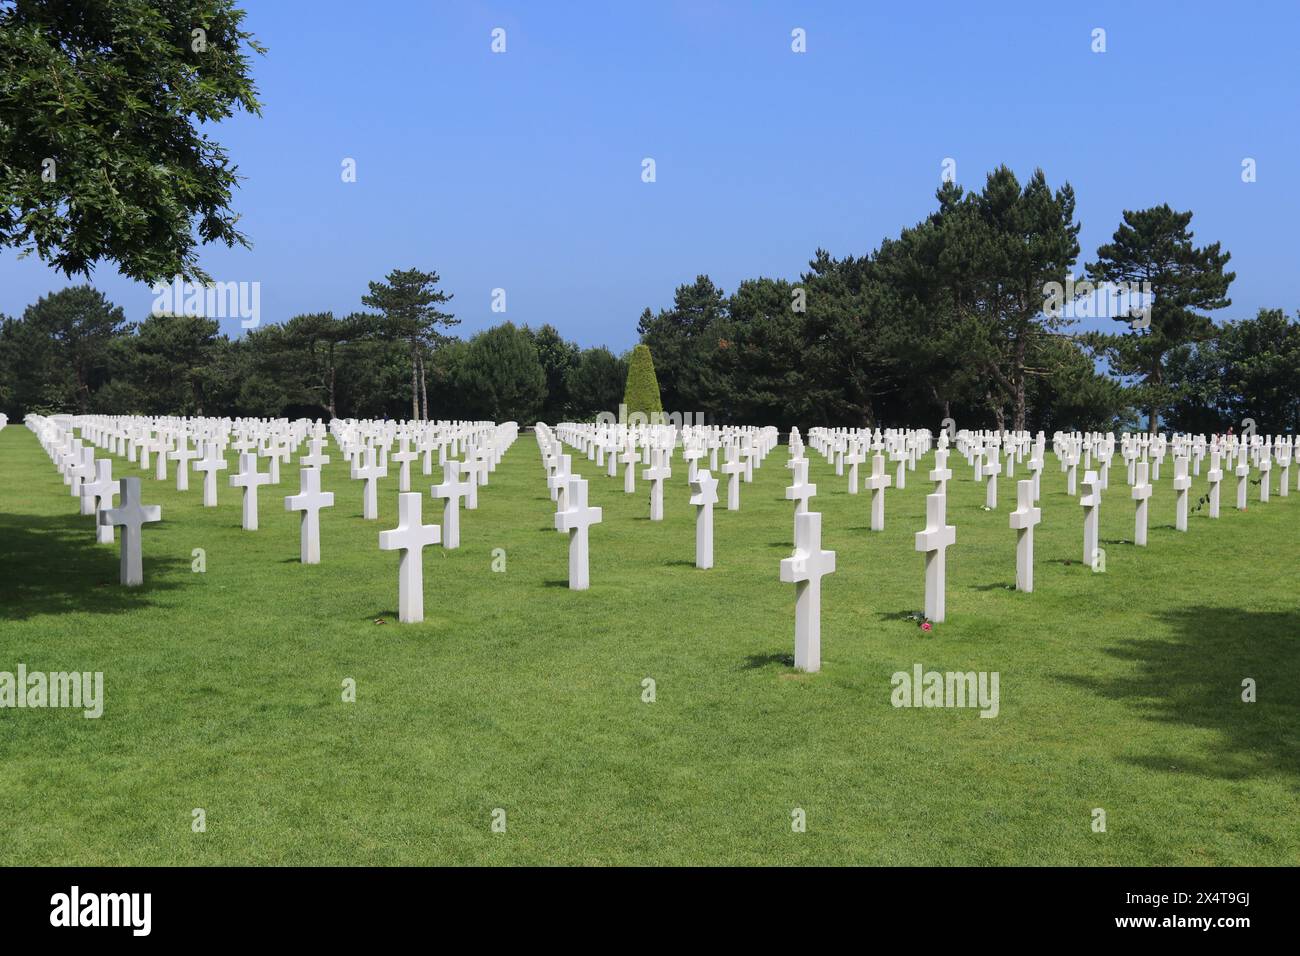 Linien von weißen Marmorkreuzen auf grünem Gras auf dem Kriegsfriedhof. Umliegende Wälder und blauer Himmel, aber keine sichtbaren Menschen. Stockfoto